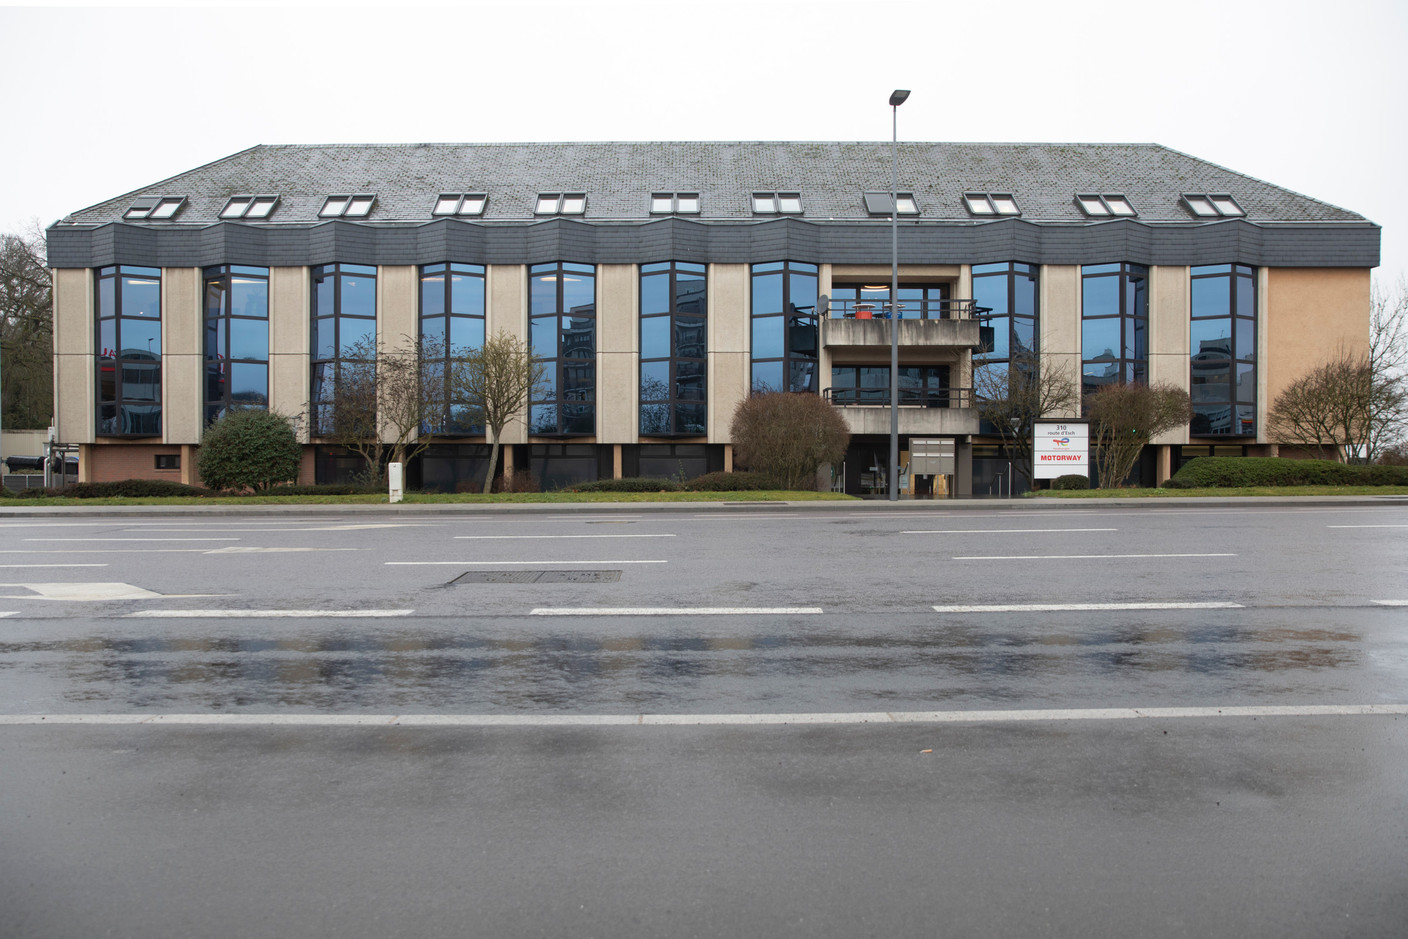 Le 310 route d'Esch à Luxembourg abrite actuellement les bureaux de TotalEnergies. (Photo: Guy Wolff/Maison Moderne)